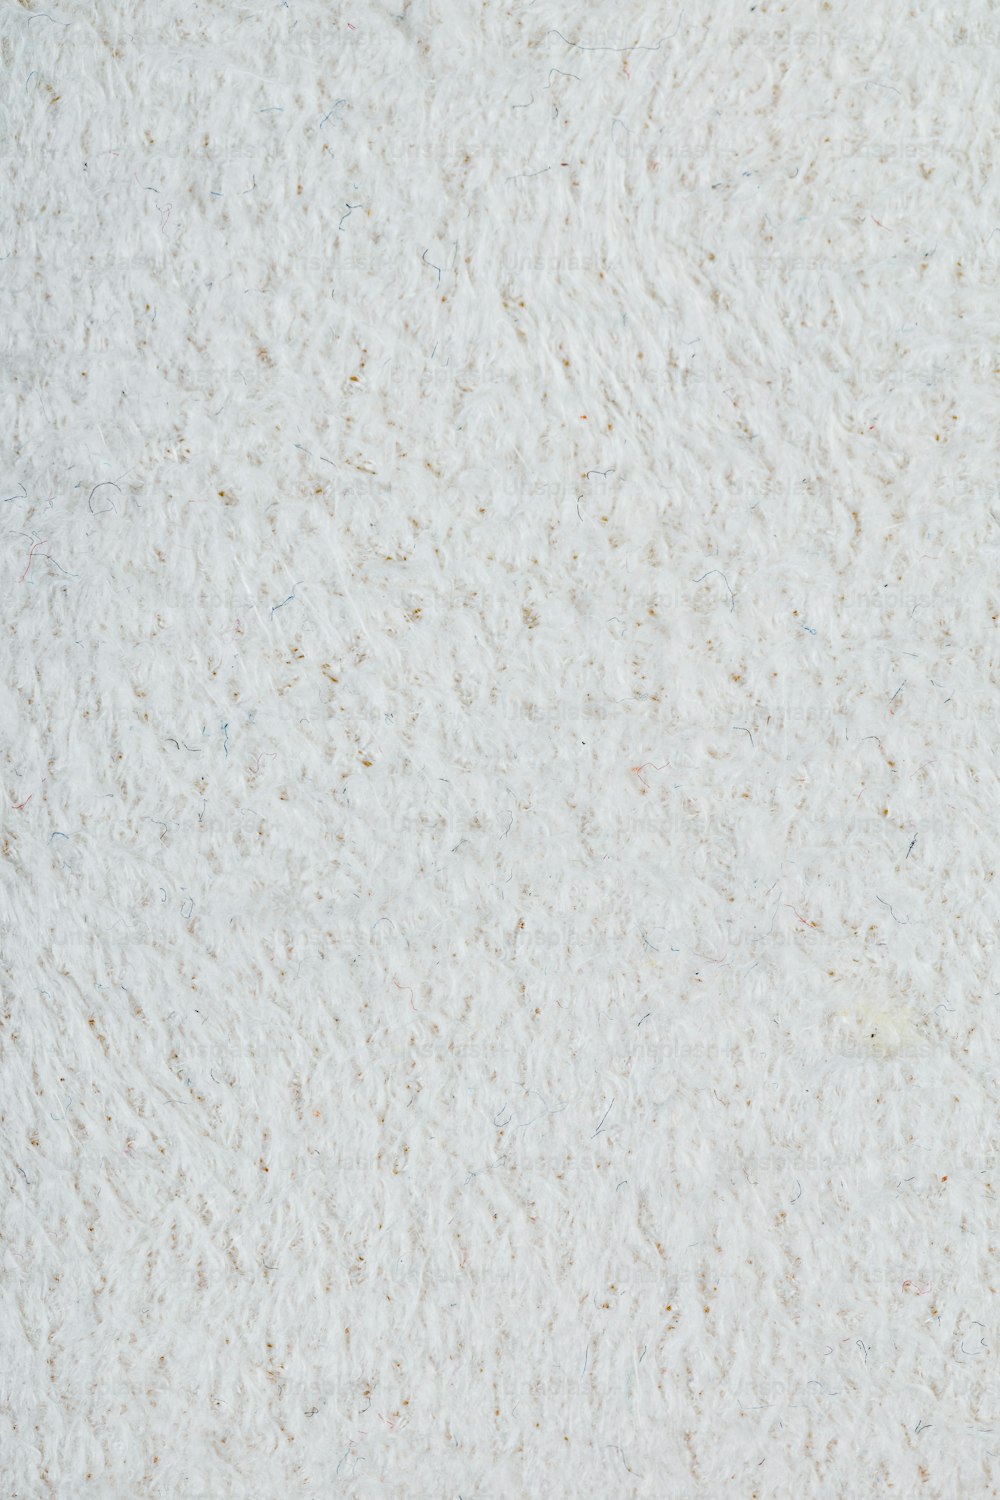 Un primer plano de una superficie blanca con pequeños puntos